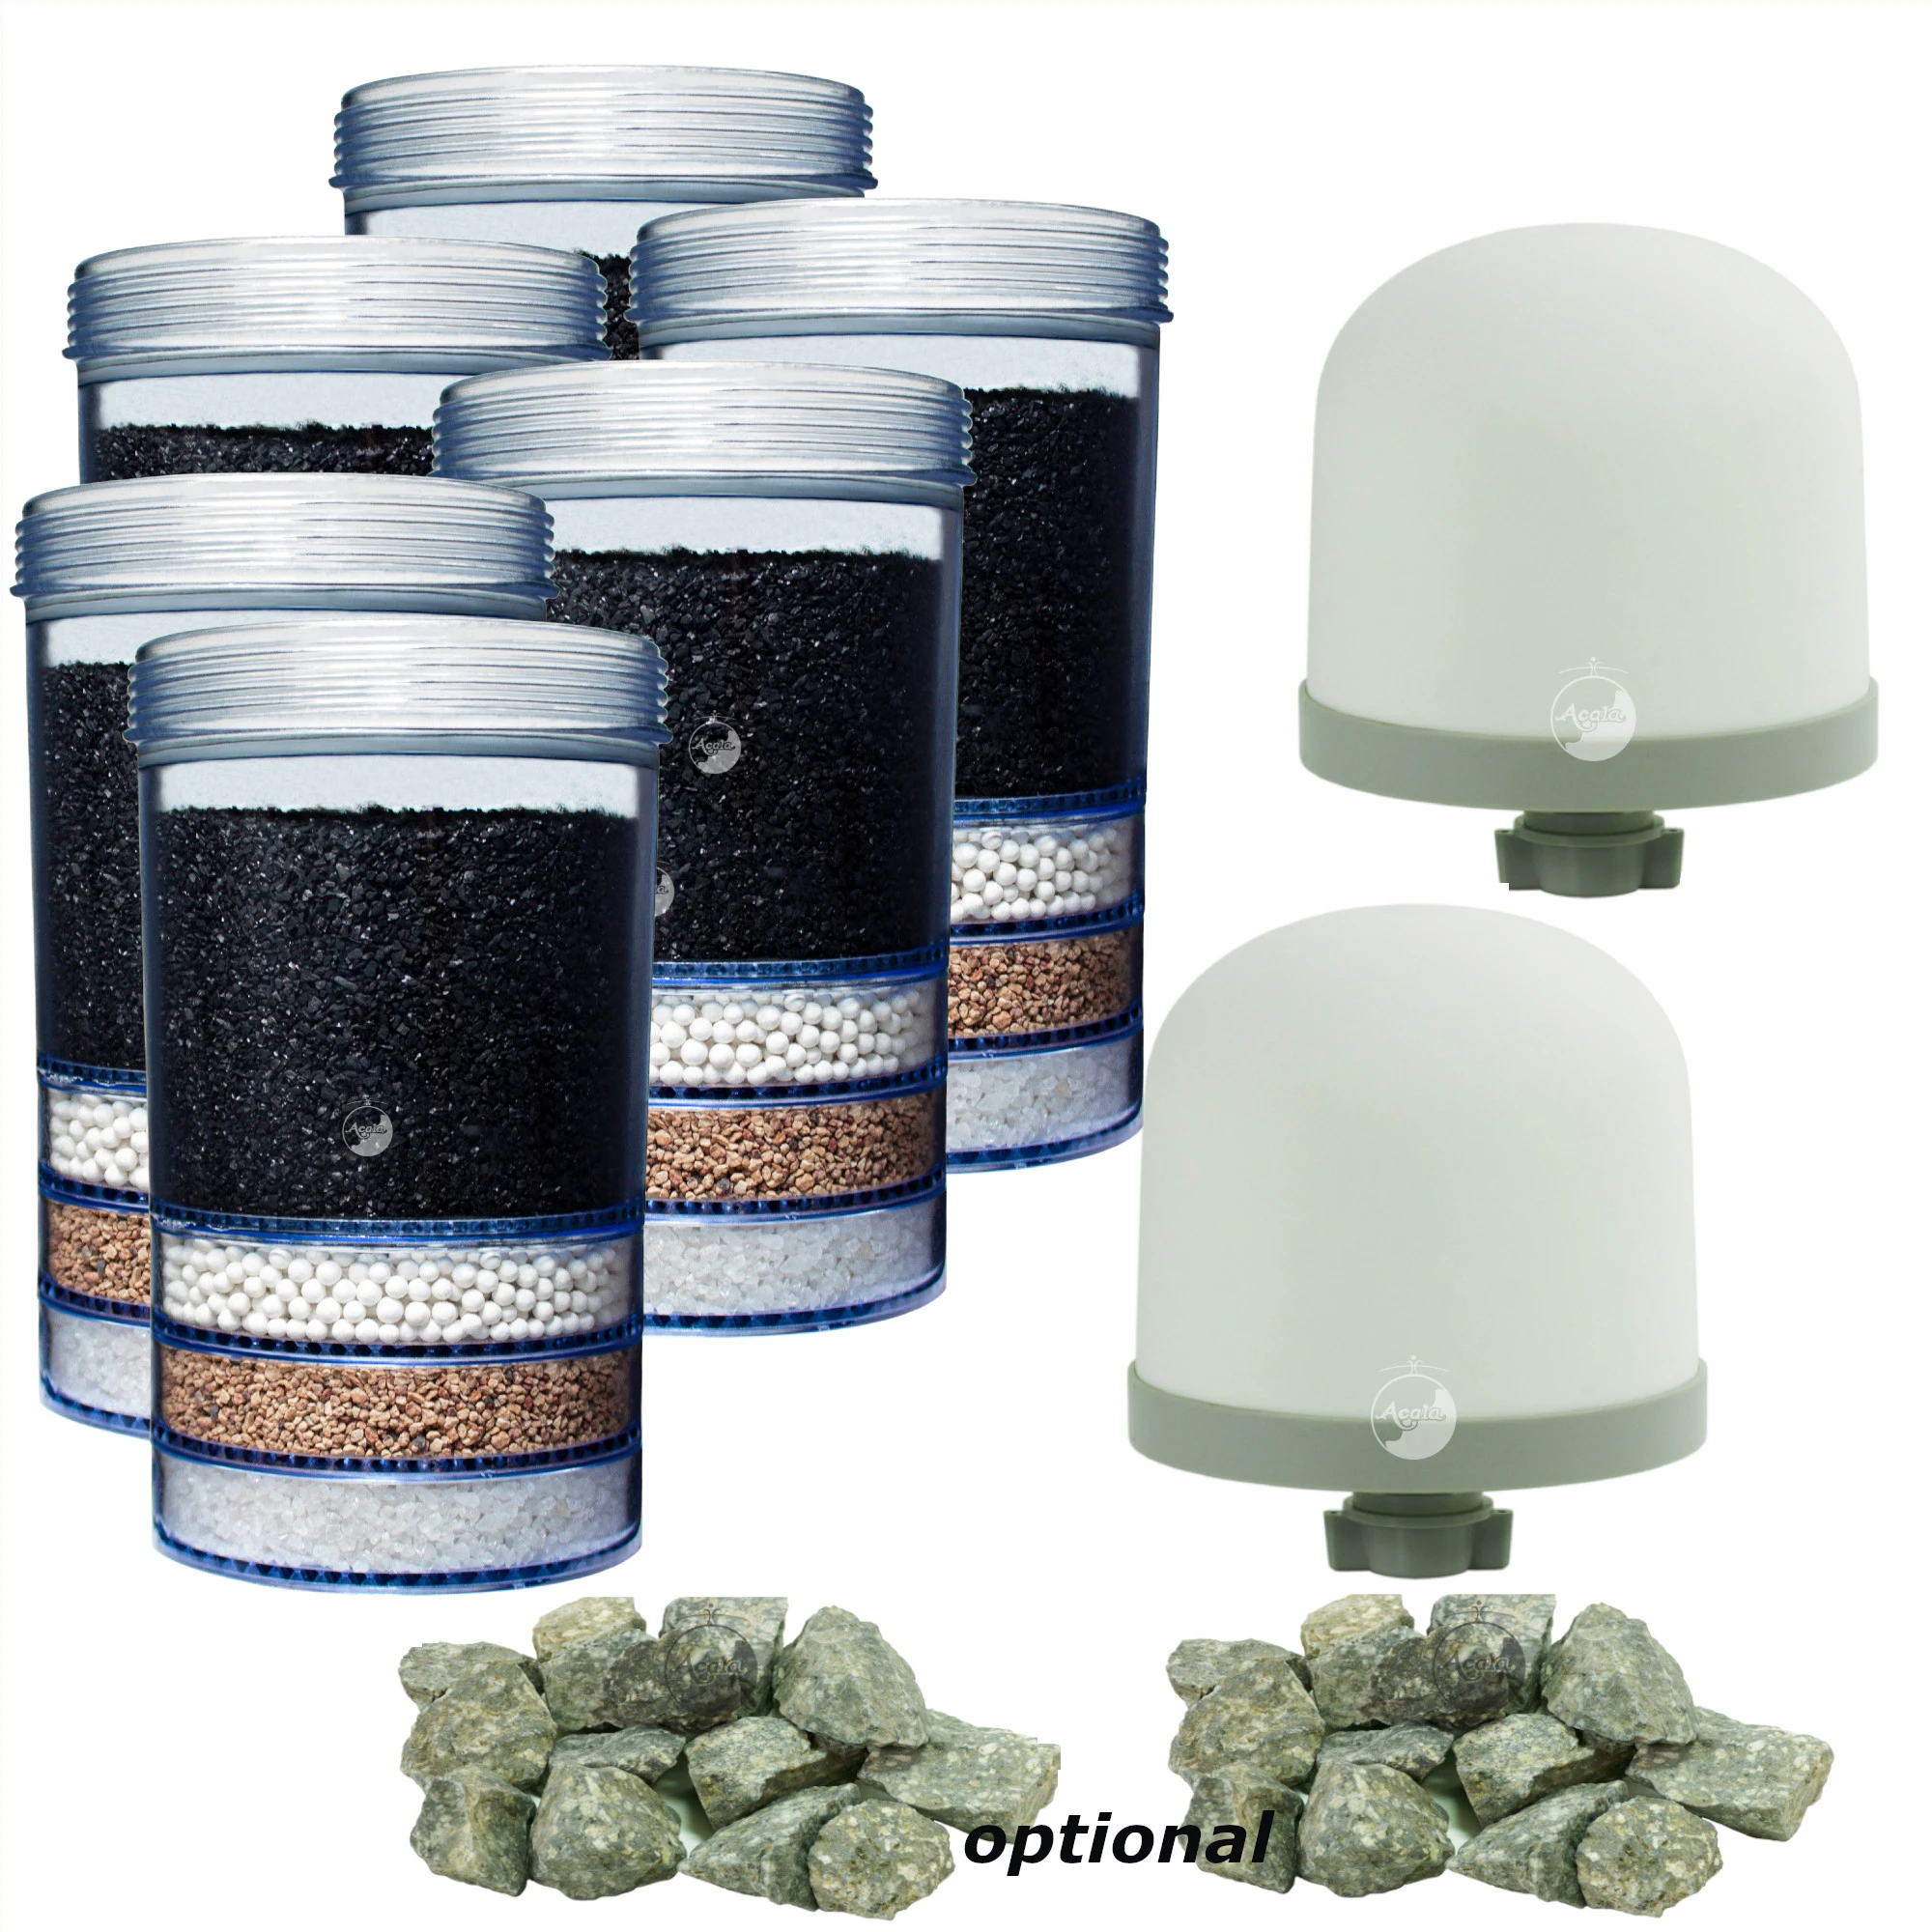 Zu sehen sind sechs Essence Filterkartuschen für Acala Standwasserfilter, zwei hohe Keramik Vorfilter und 2 Haufen mit grau grünen Mineralsteinen vor weißem Hintergrund. Das Bild zeigt ein Angebot für zwei Jahre.